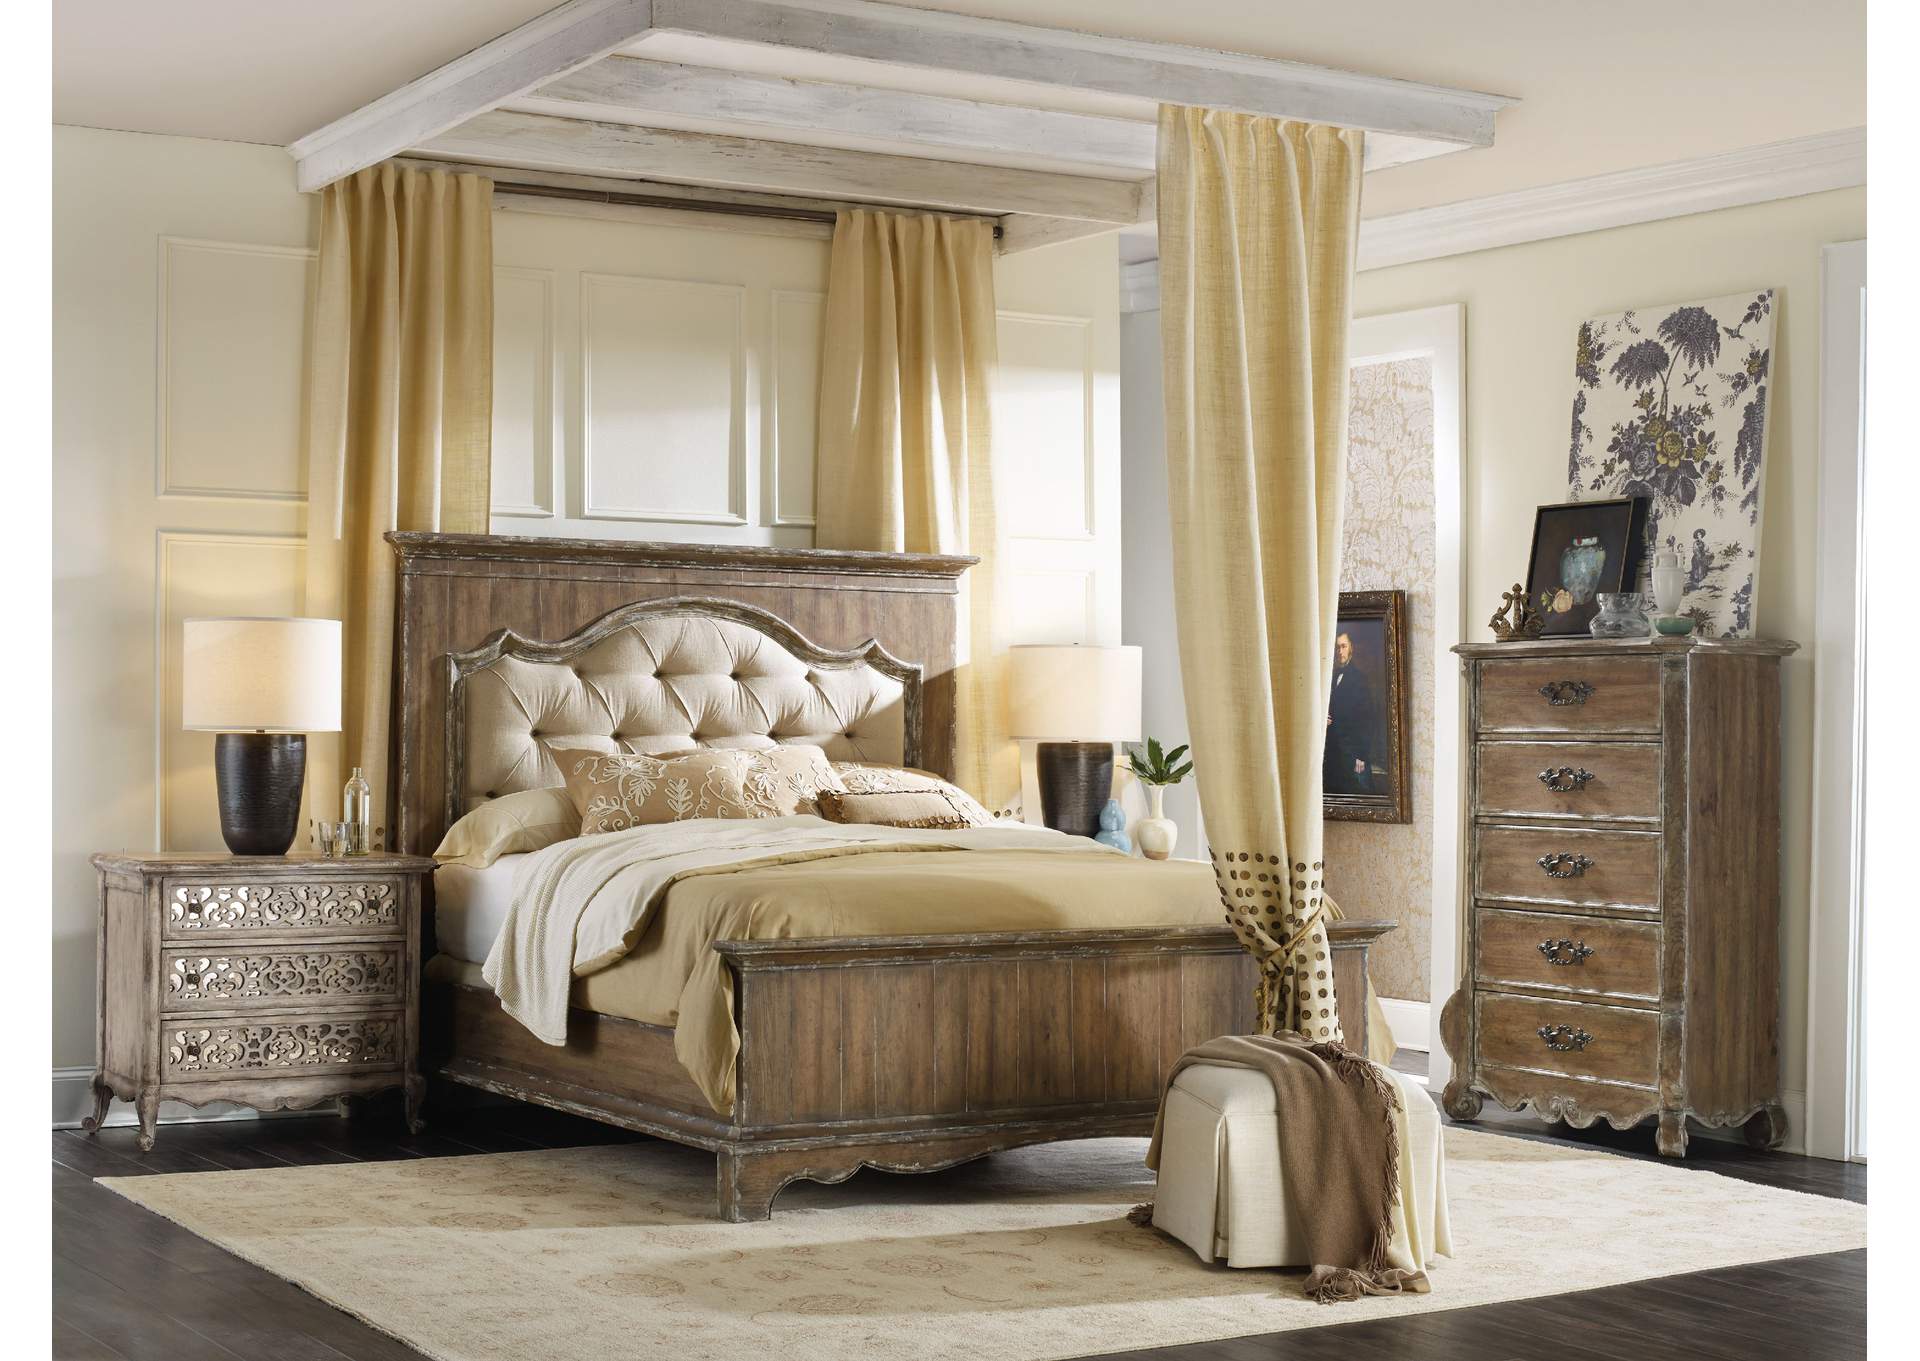 Chatelet King Upholstered Mantle Panel Bed,Hooker Furniture